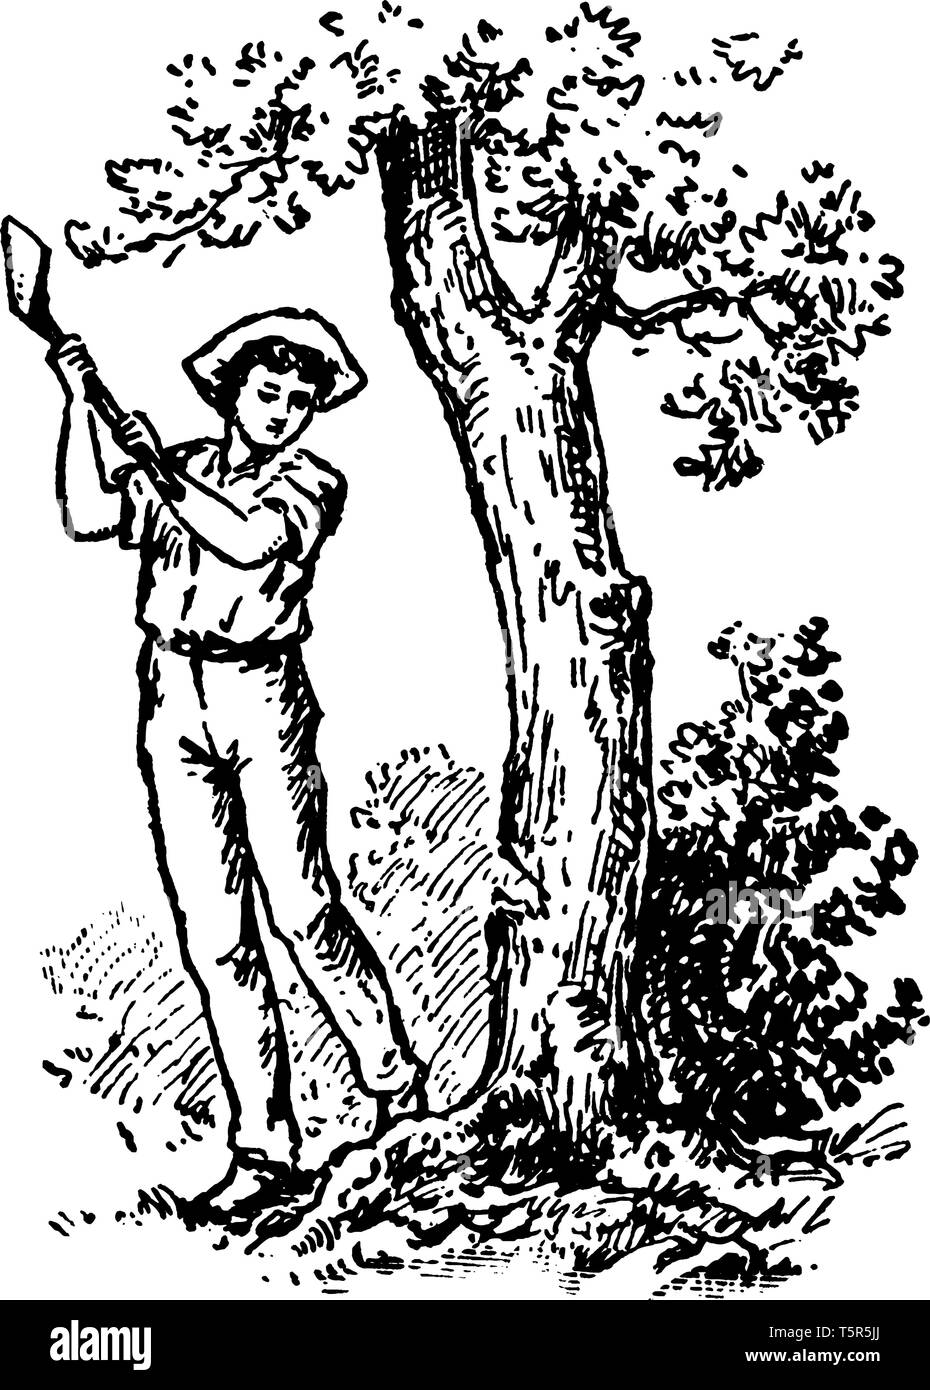 Ein Mann schneiden Baum mit Ax, vintage Strichzeichnung oder Gravur Abbildung Stock Vektor